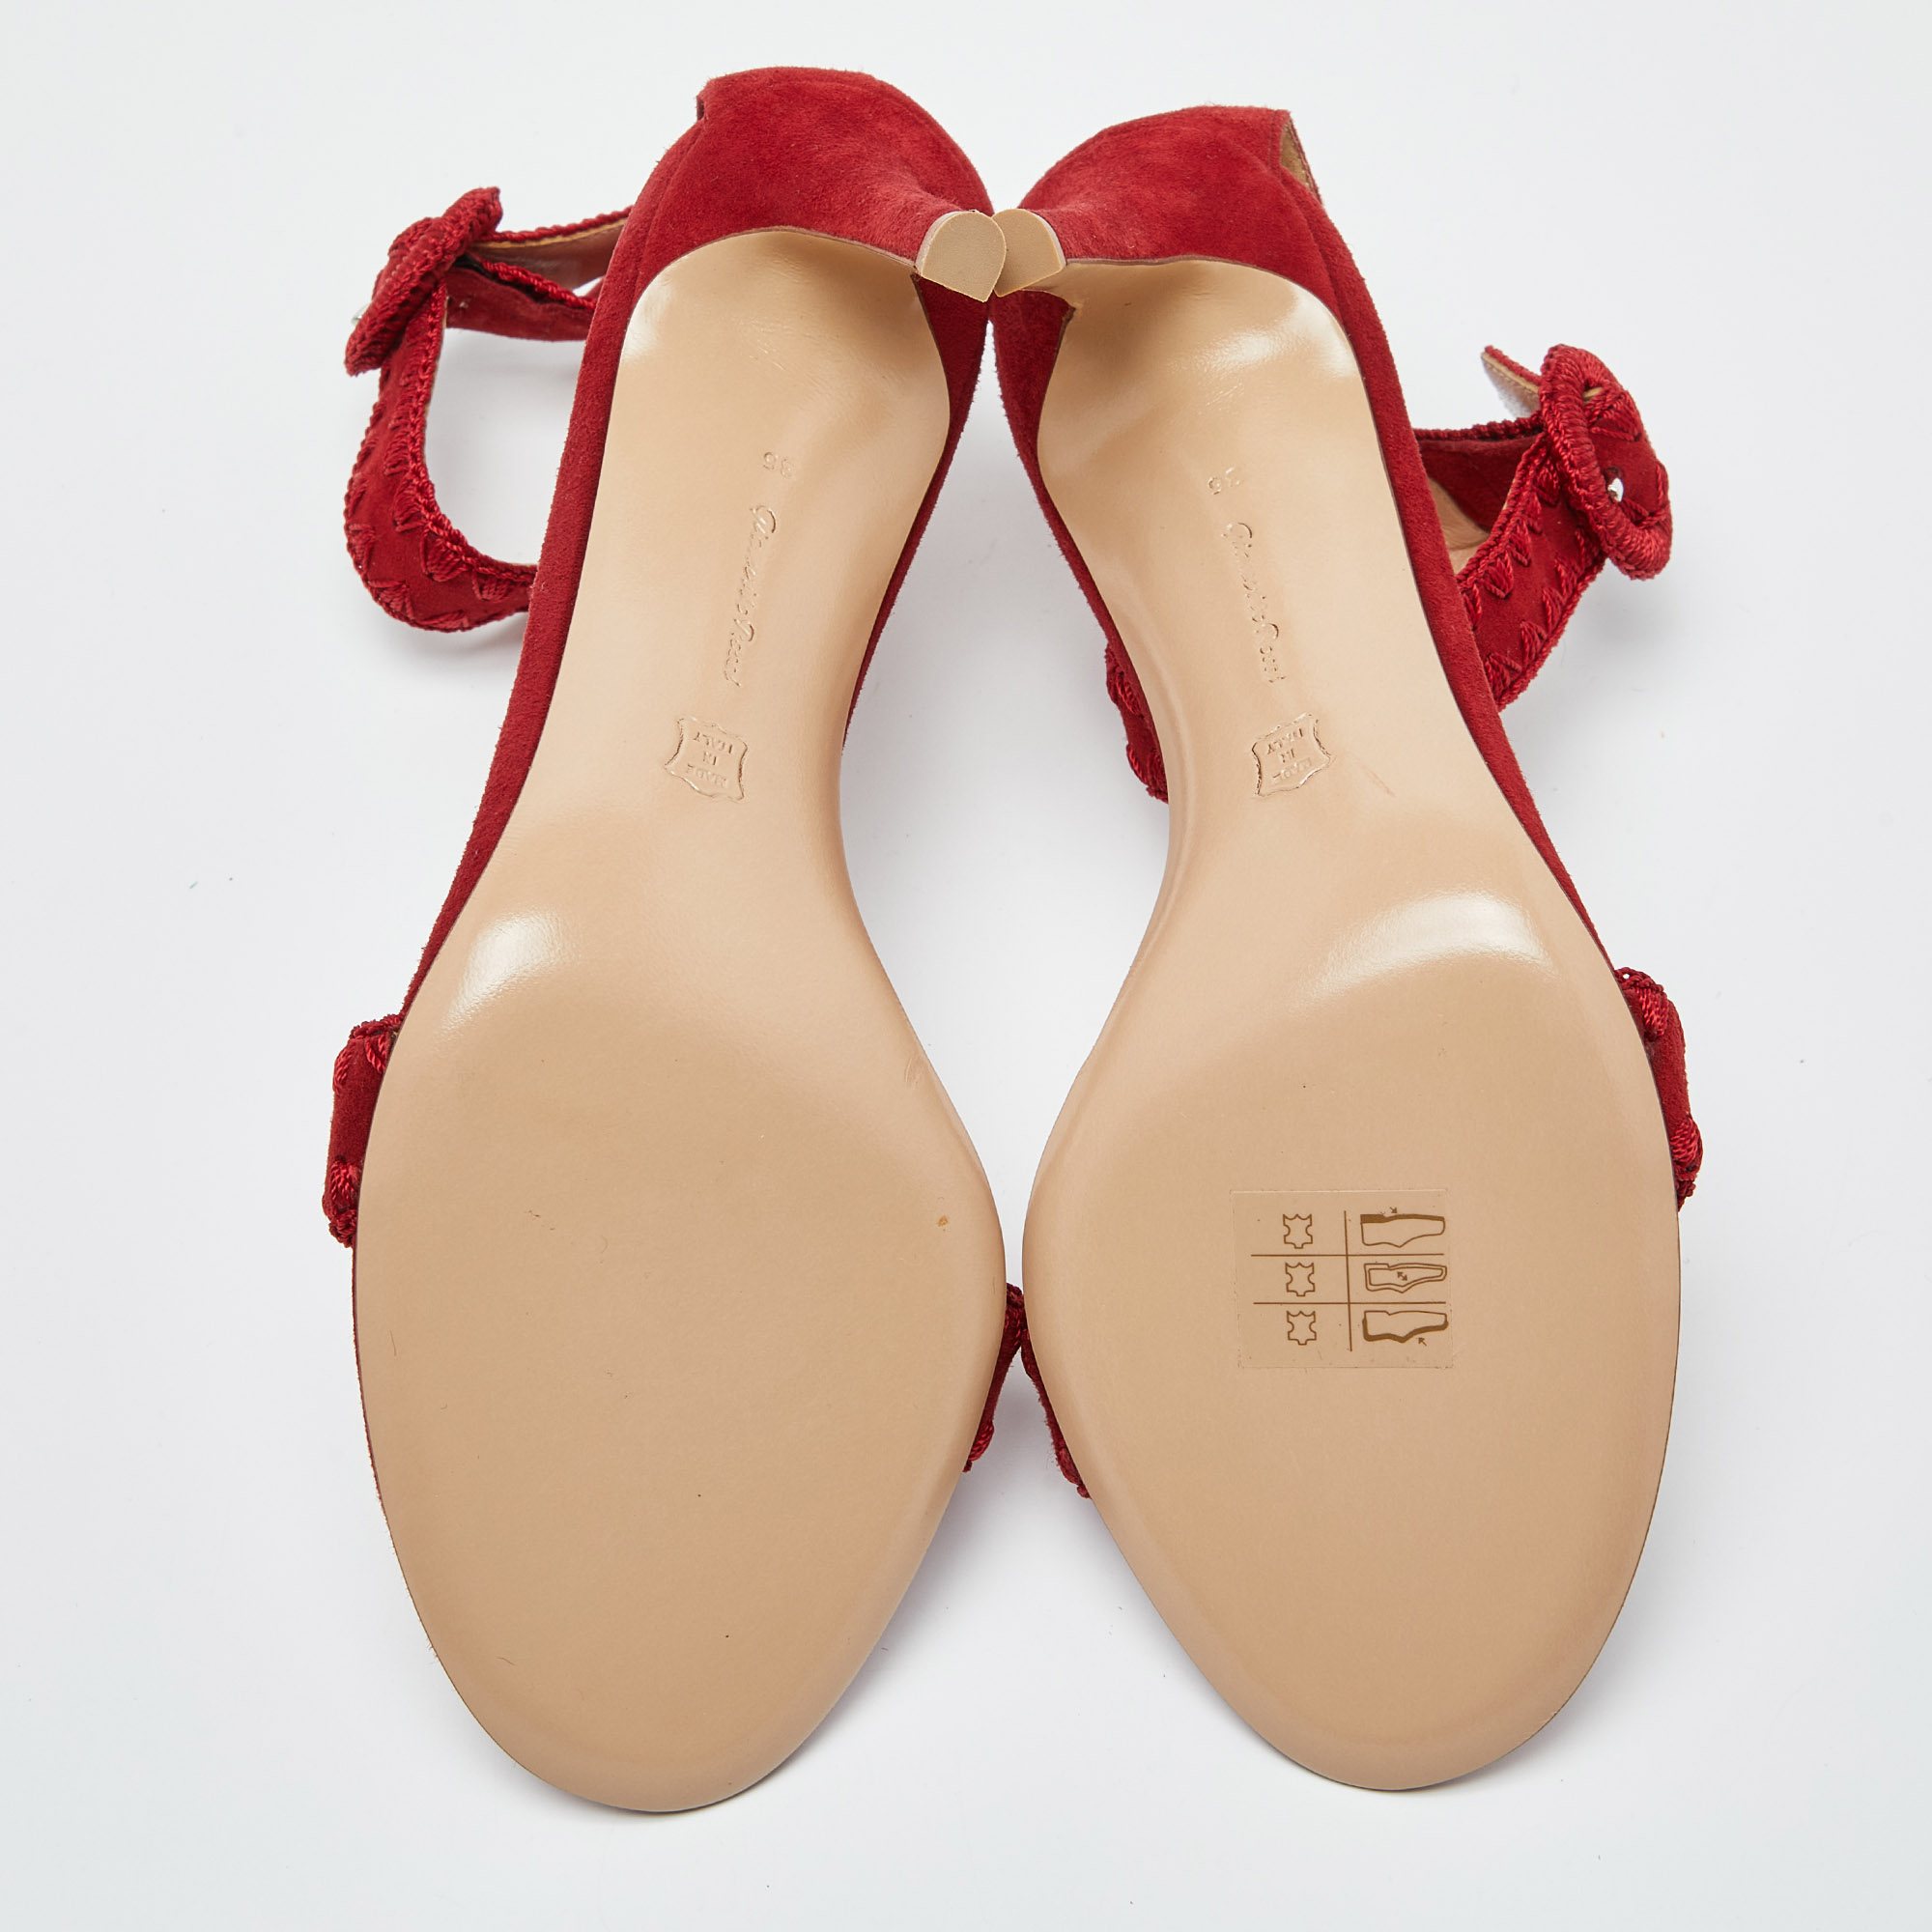 Gianvito Rossi Red/Beige Suede Whipstitch Portofino Sandals Size 36